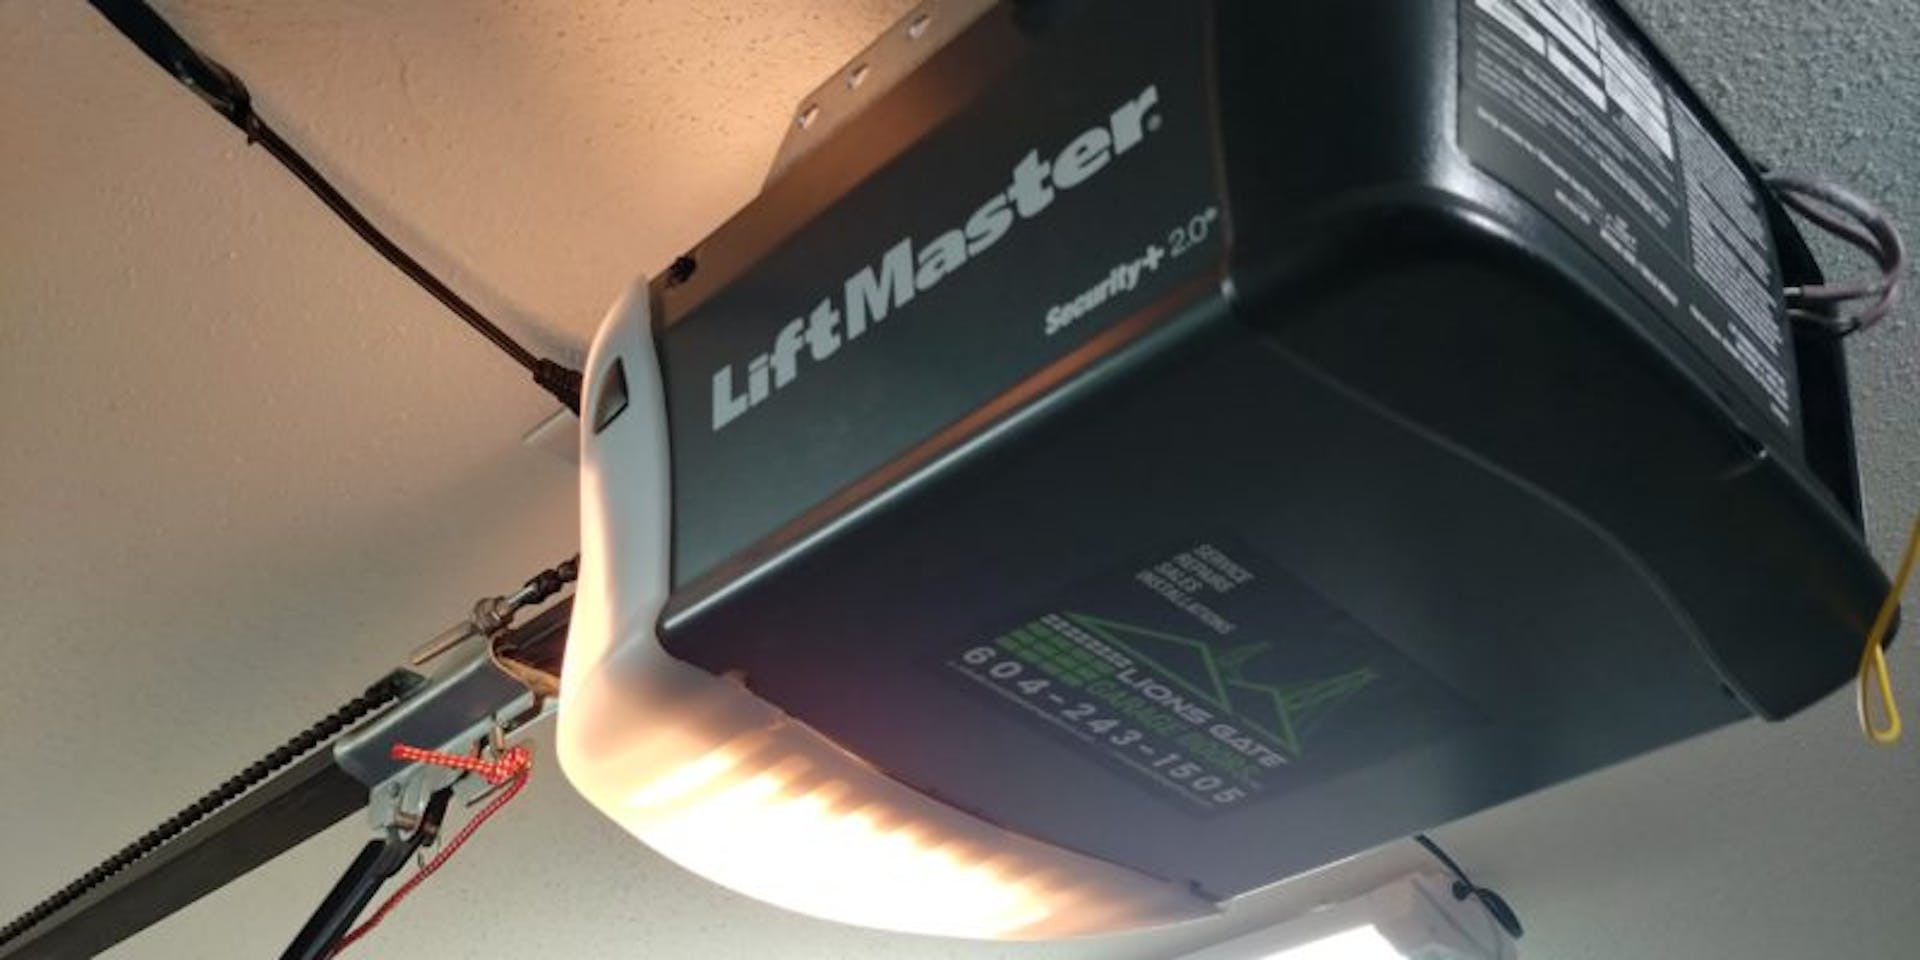 Liftmaster opener repair